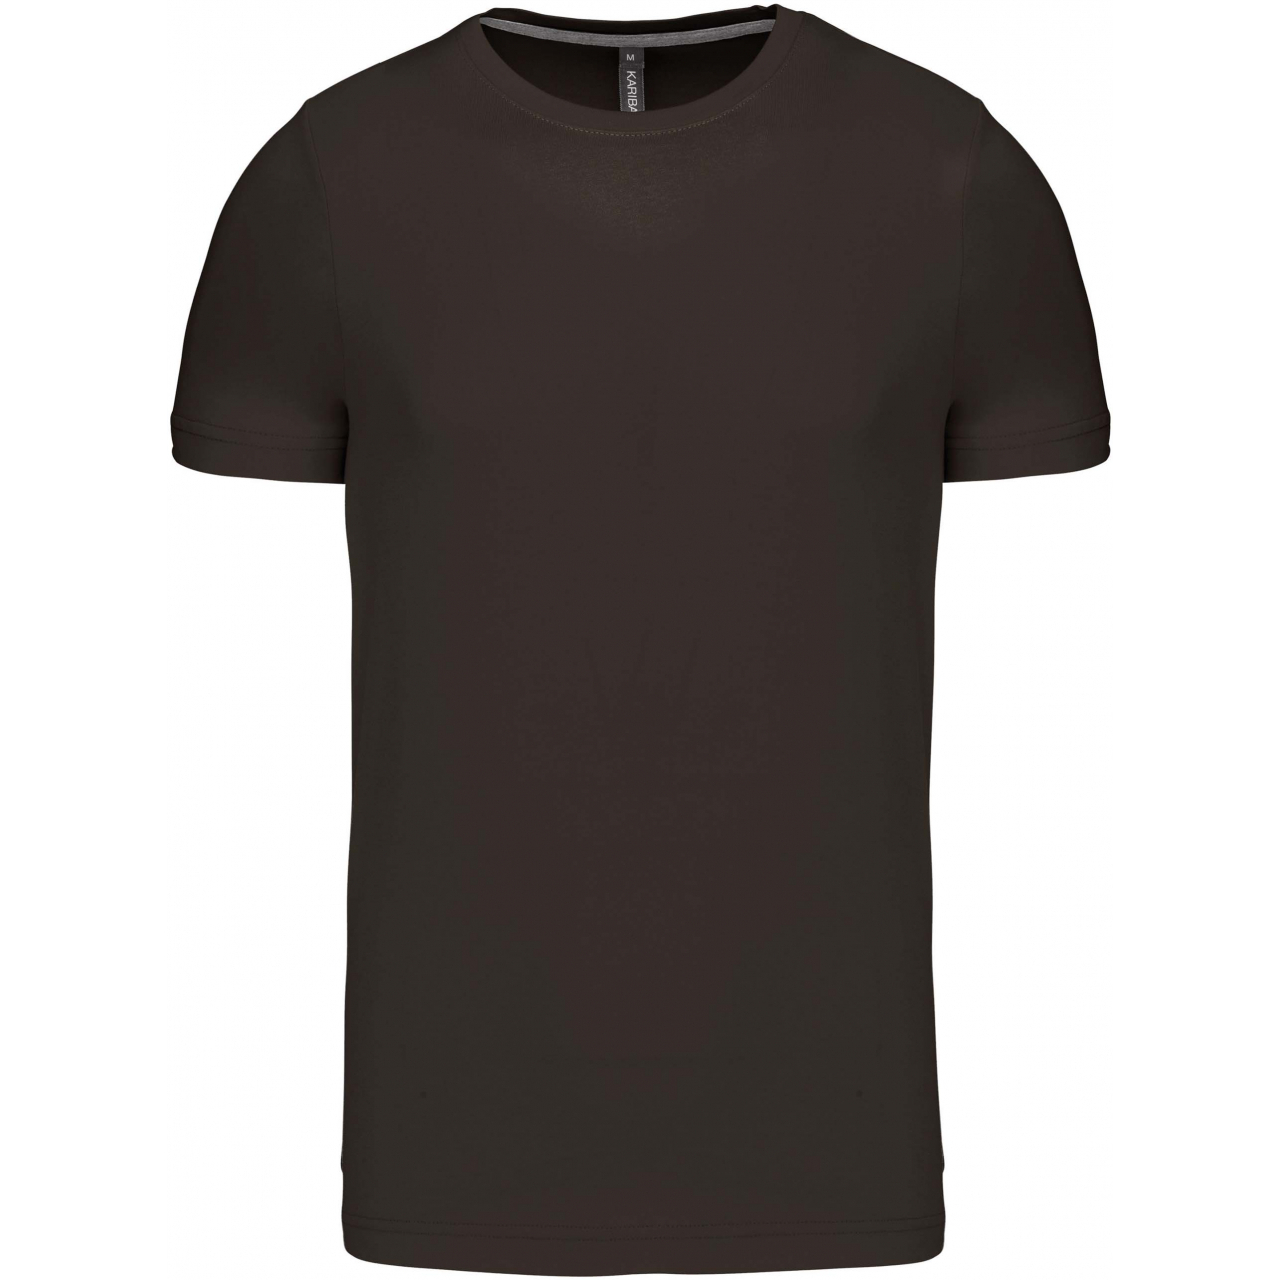 Pánské tričko Kariban krátký rukáv - tmavé khaki, L